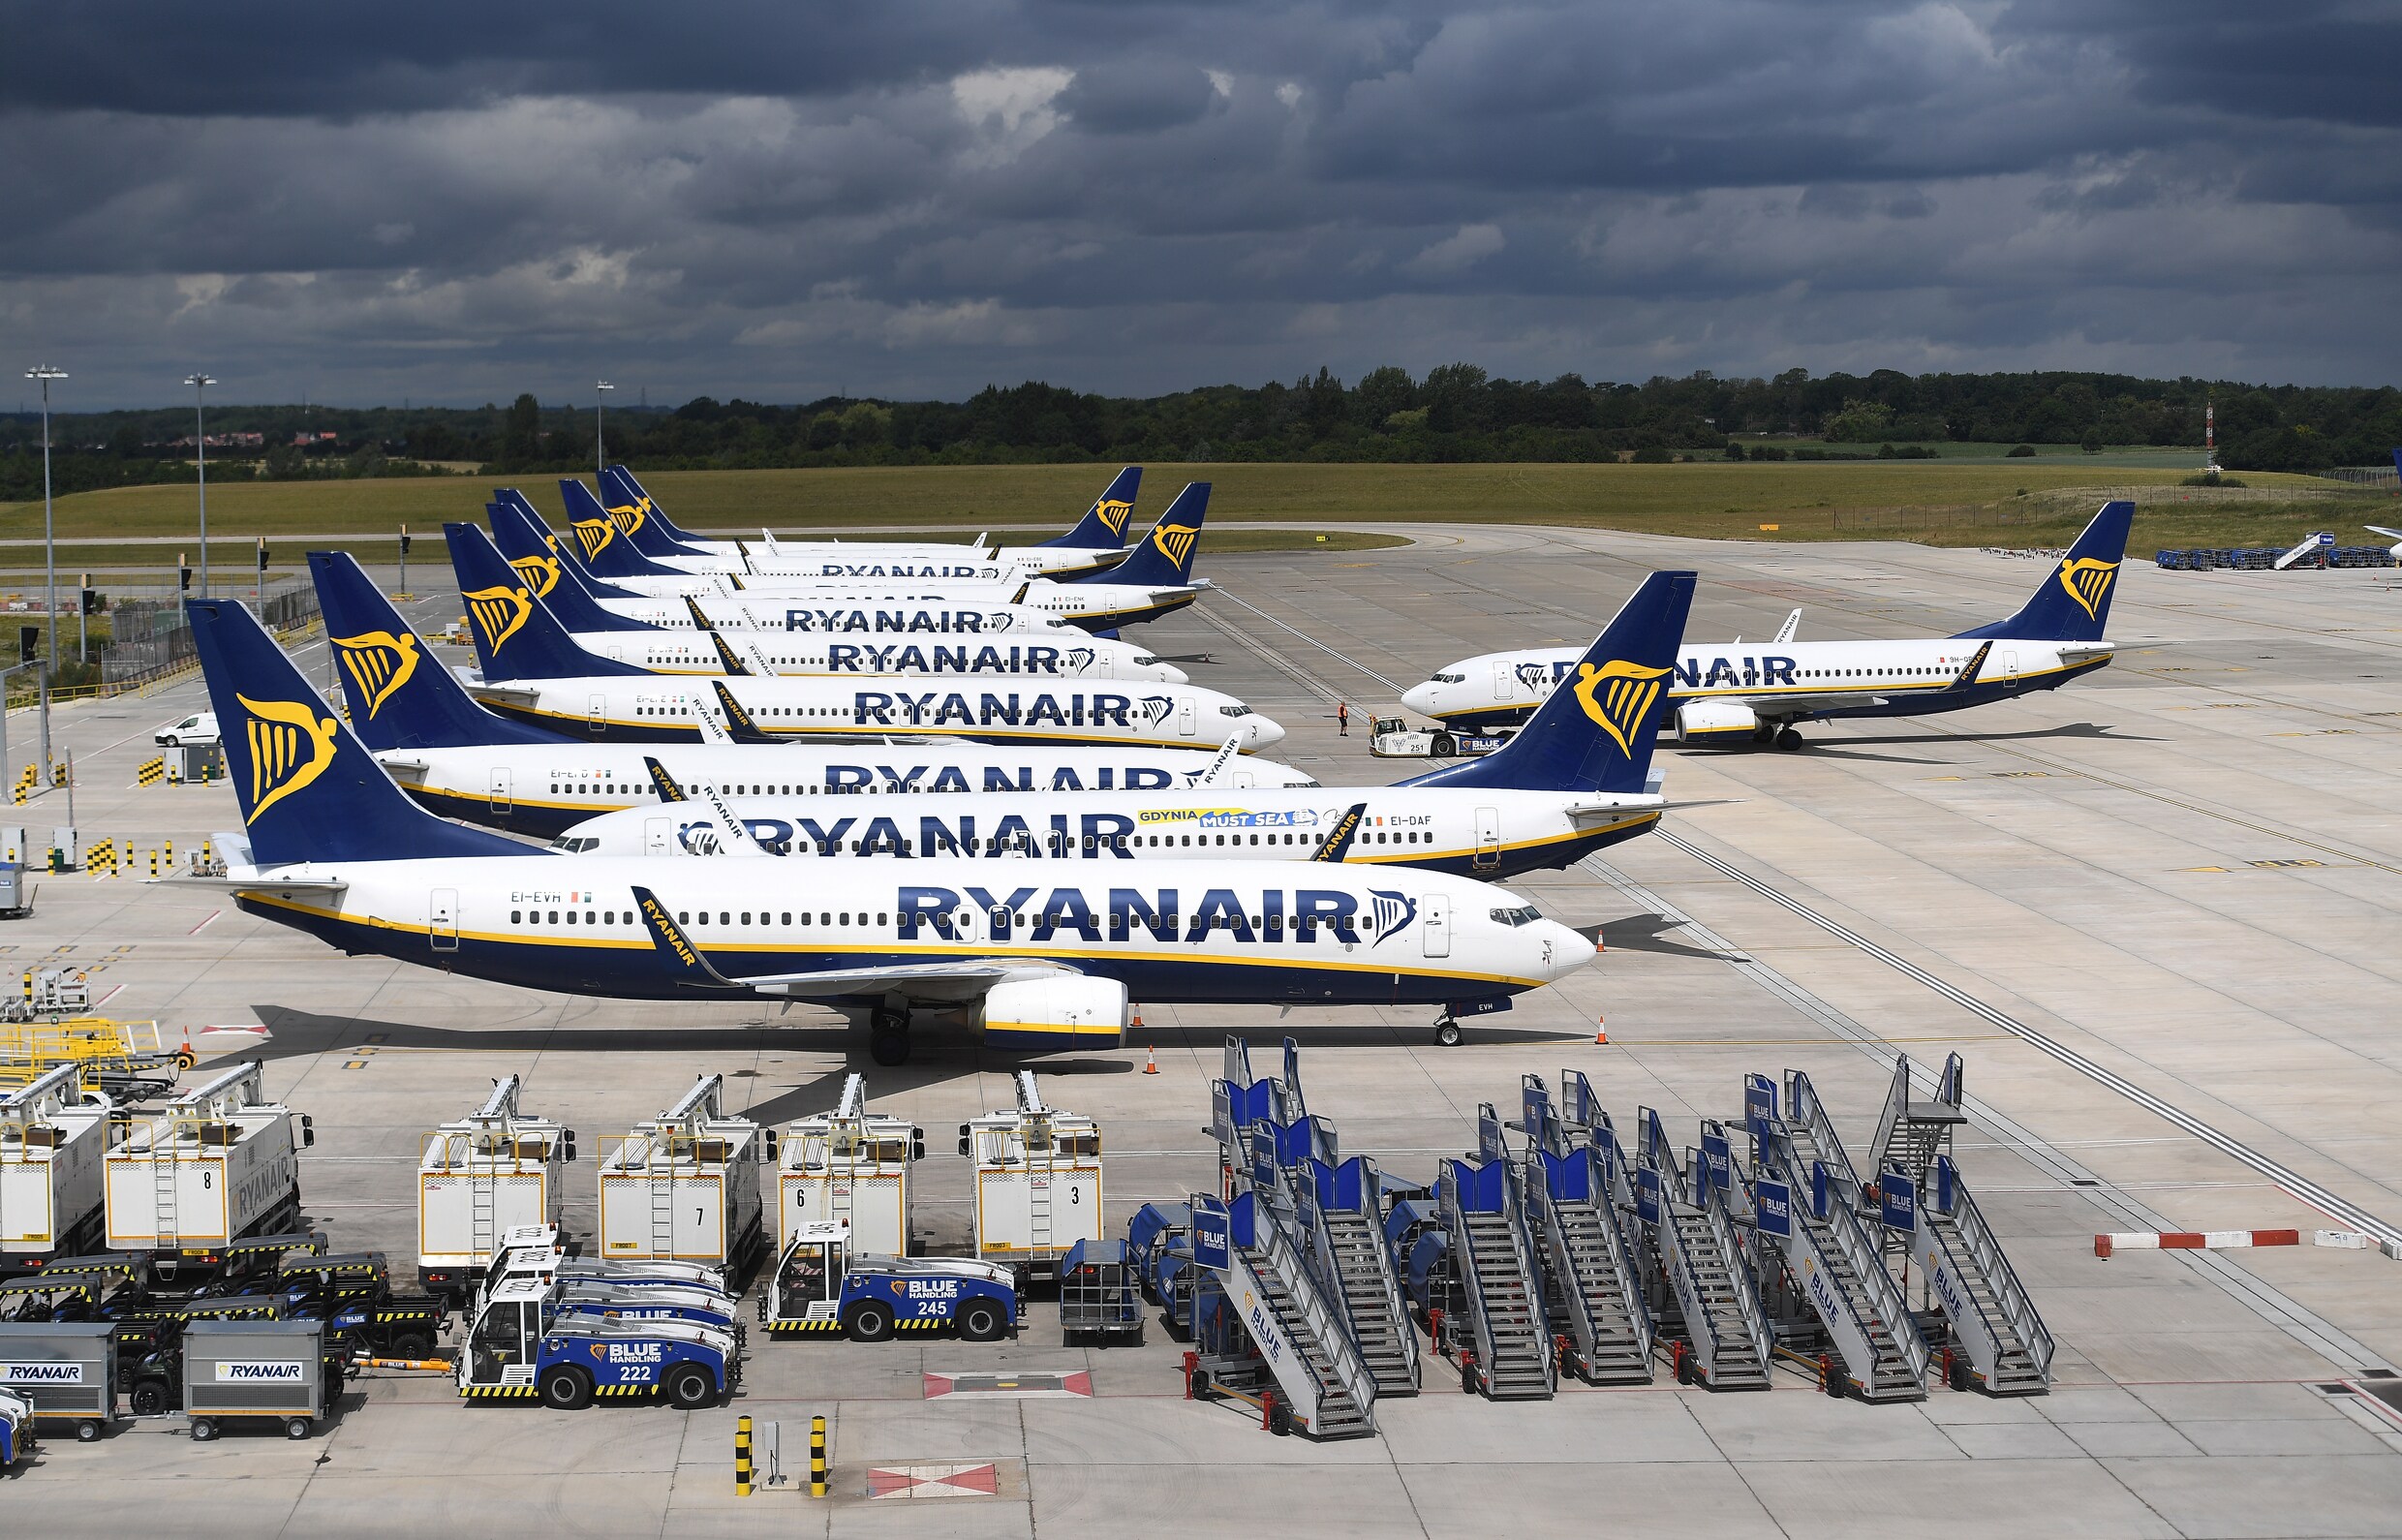 Twee straaljagers begeleiden Ryanair-vlucht na bombrief op toilet